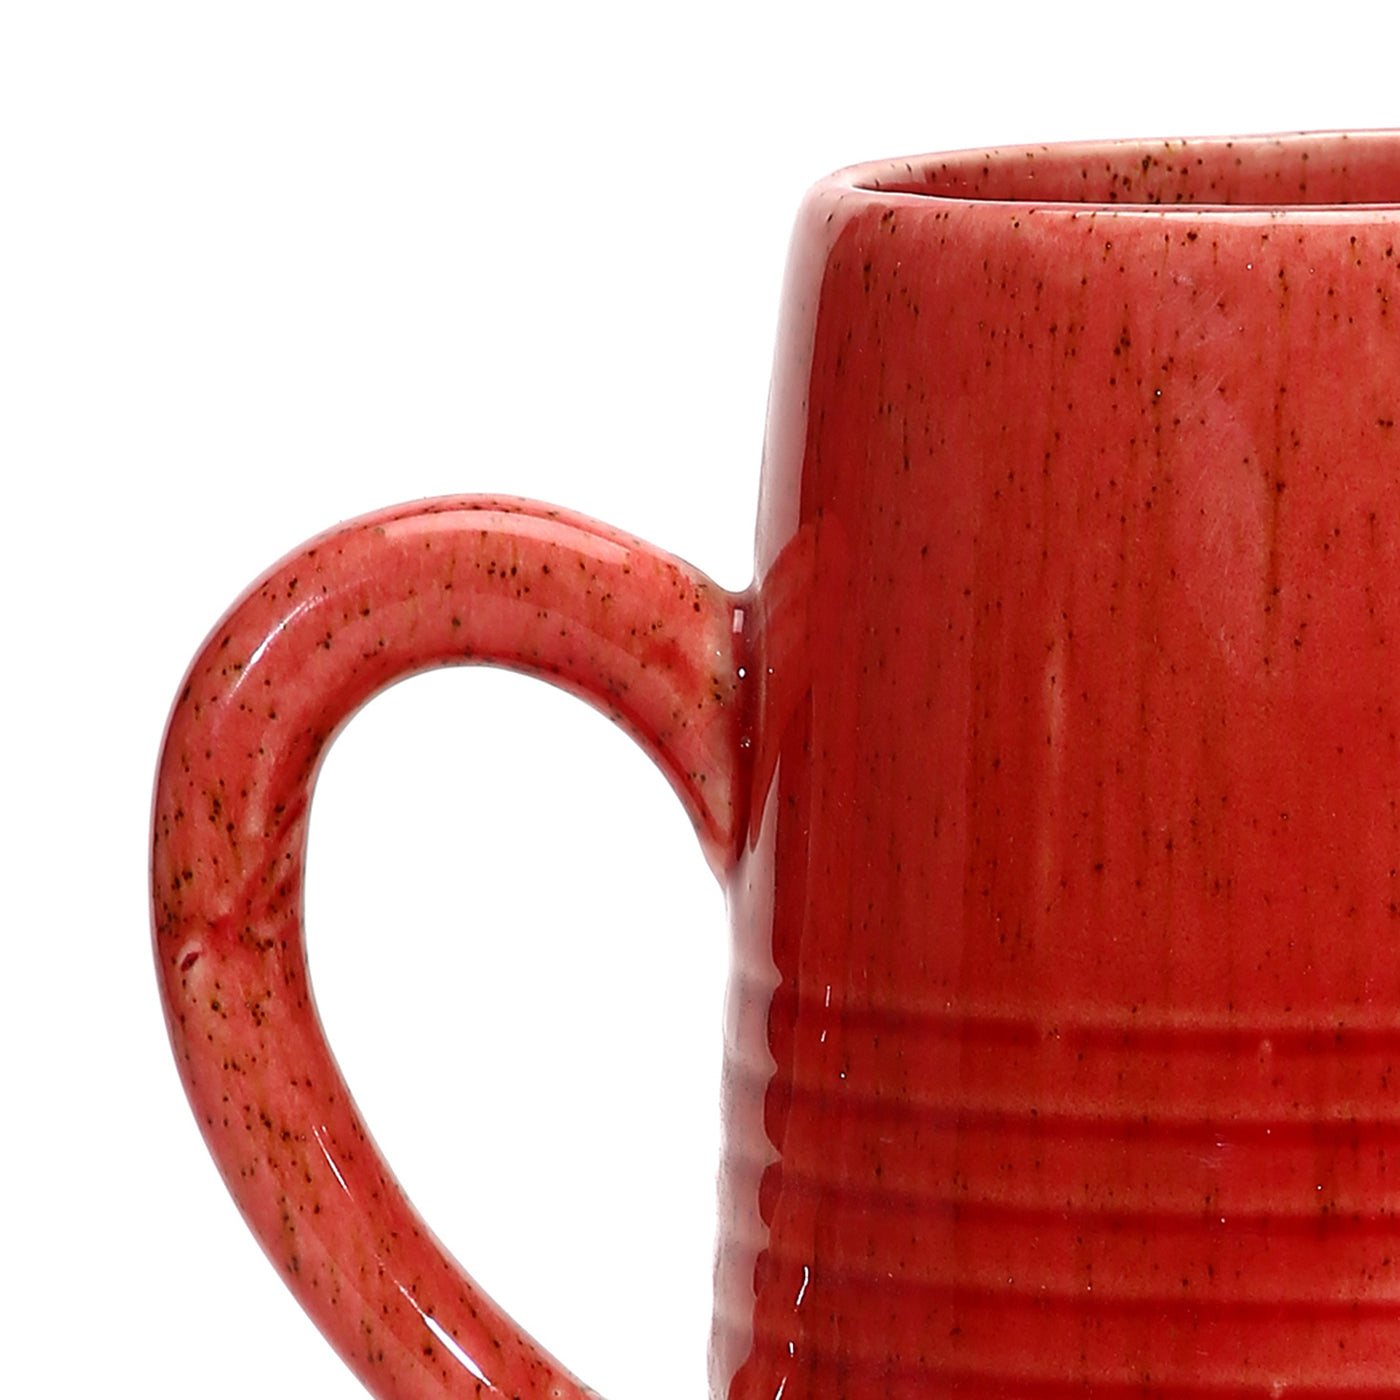 Amalfiee Pink Studio Pottery Handmade Large Ceramic Jug Vase